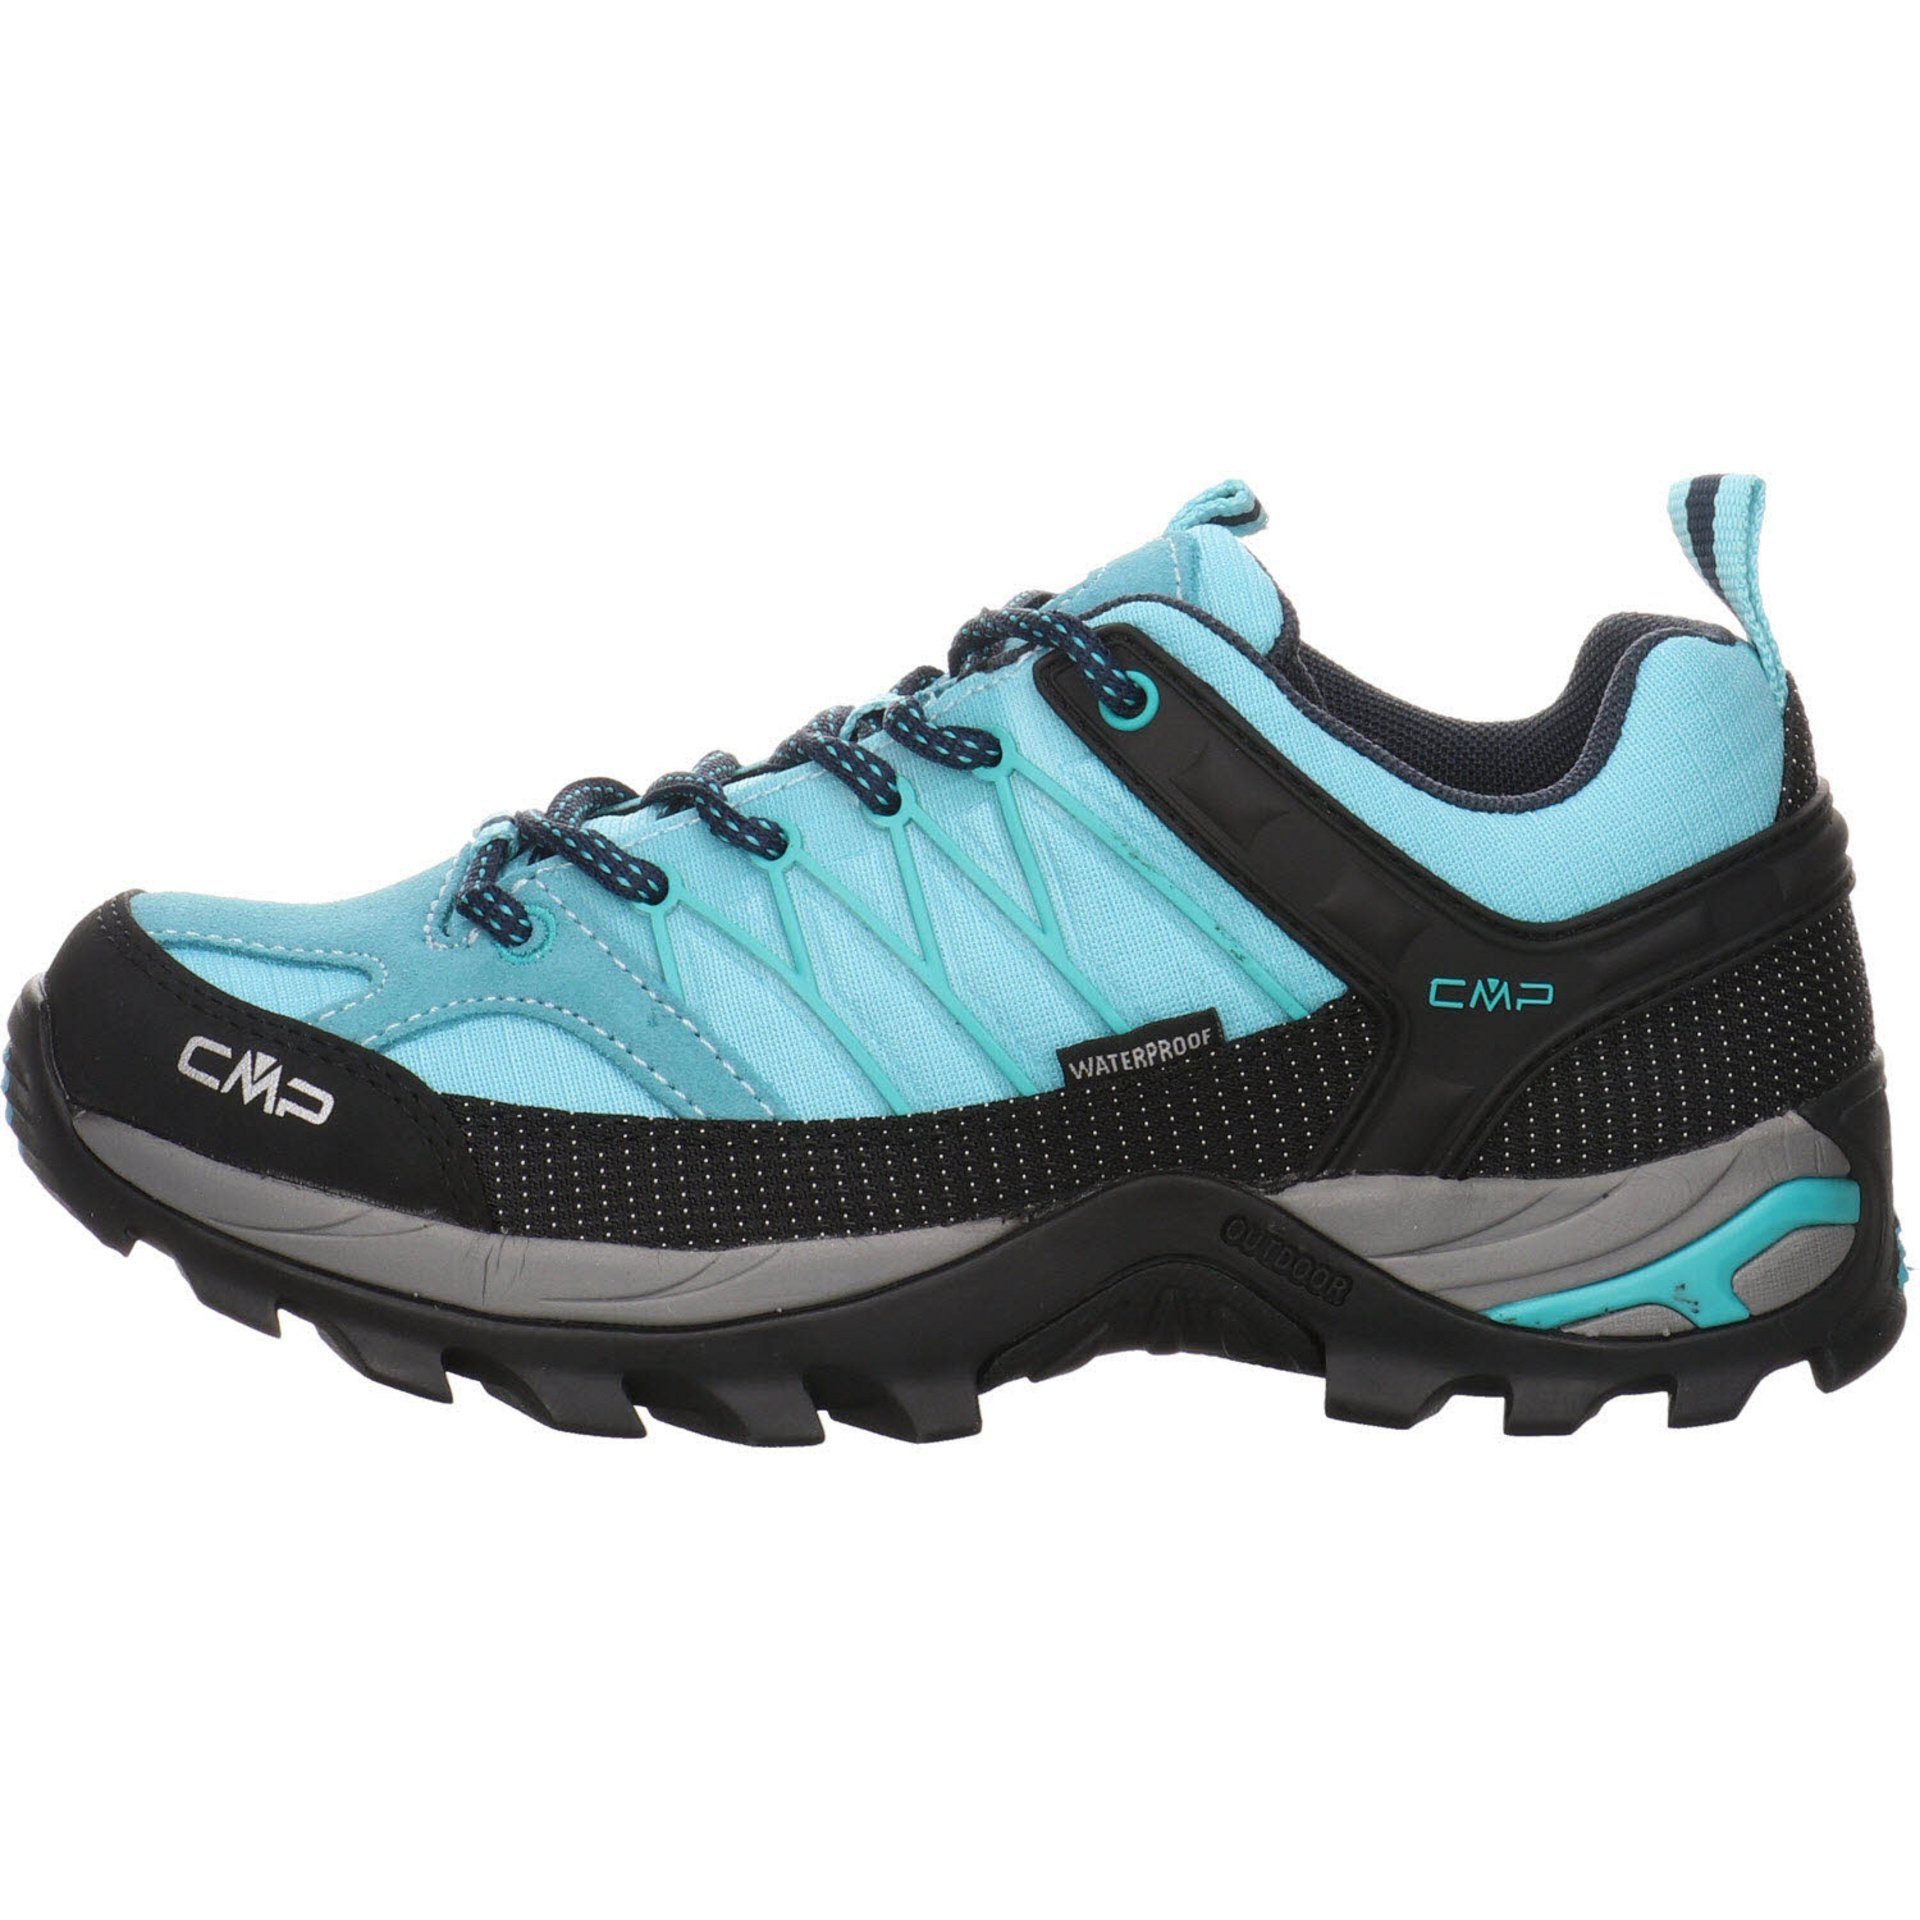 CMP Damen Schuhe Outdoorschuh Low Outdoor Synthetikkombination kombiniert Rigel Outdoorschuh blau mit